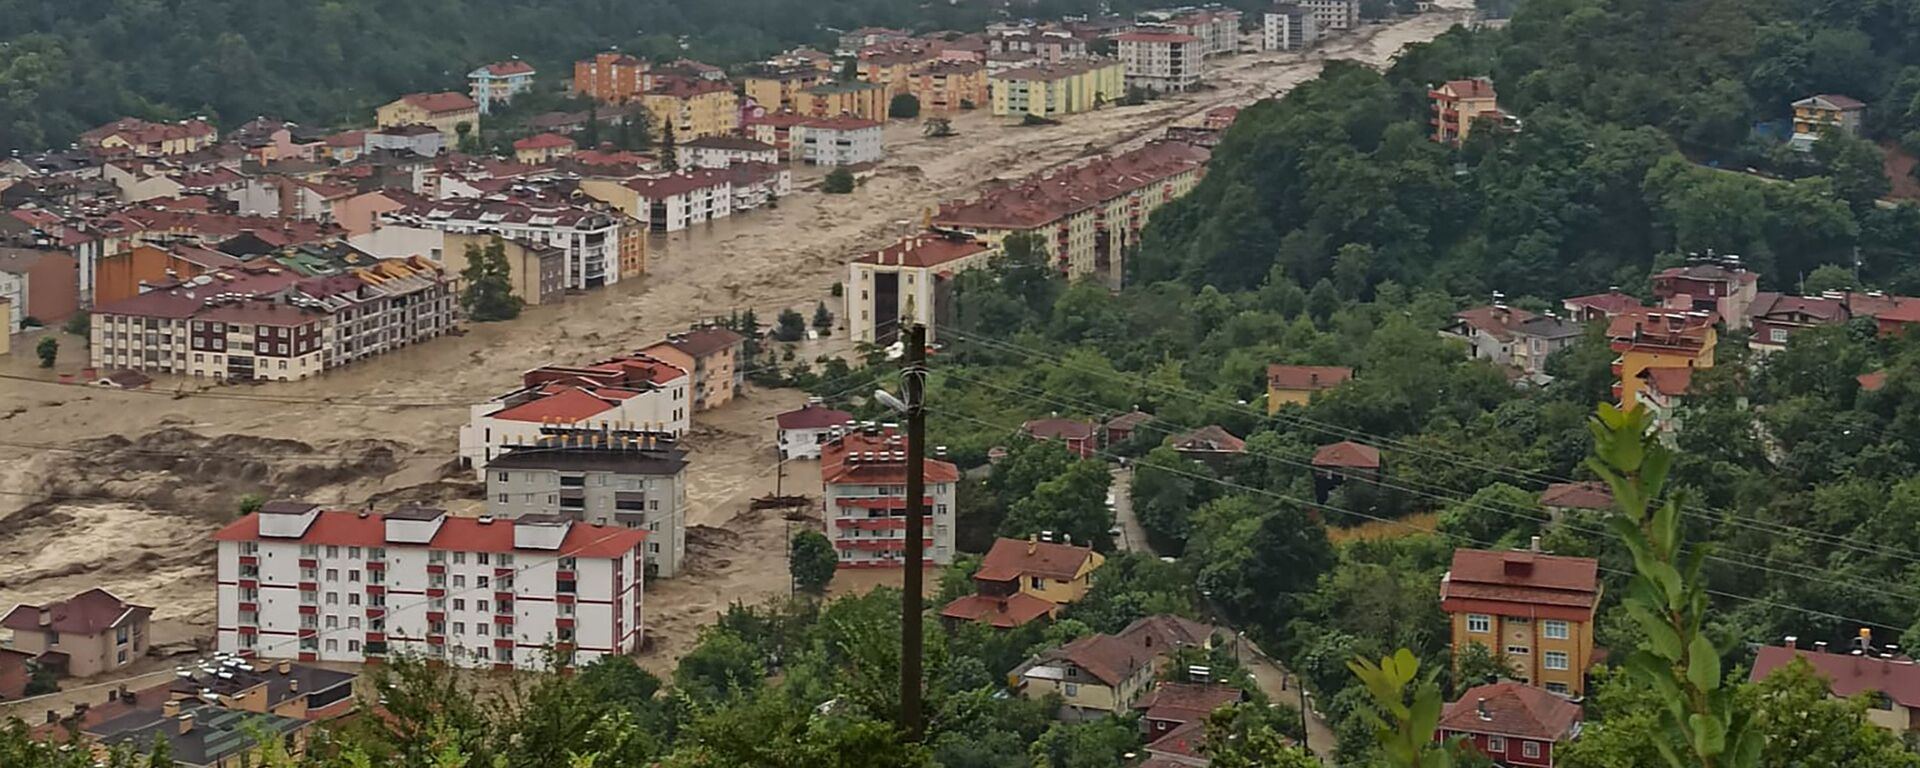 منطقة أغرقتها الفيضانات في أعقاب هطول أمطار غزيرة بالقرب من كاستامونو في تركيا 11 أغسطس 2021 - سبوتنيك عربي, 1920, 17.08.2021